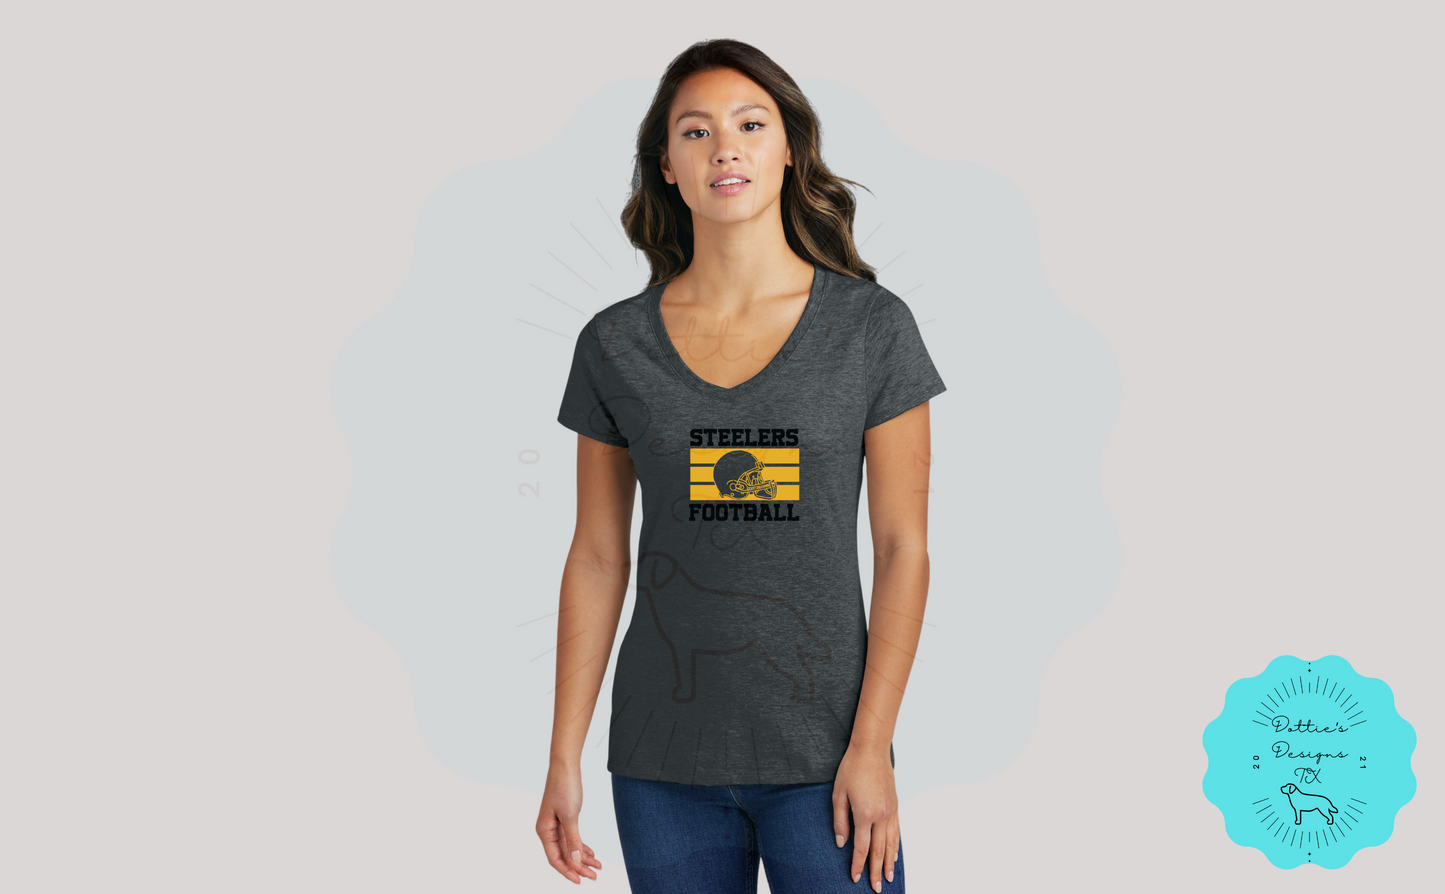 Steelers Football Soft Cotton T-Shirt